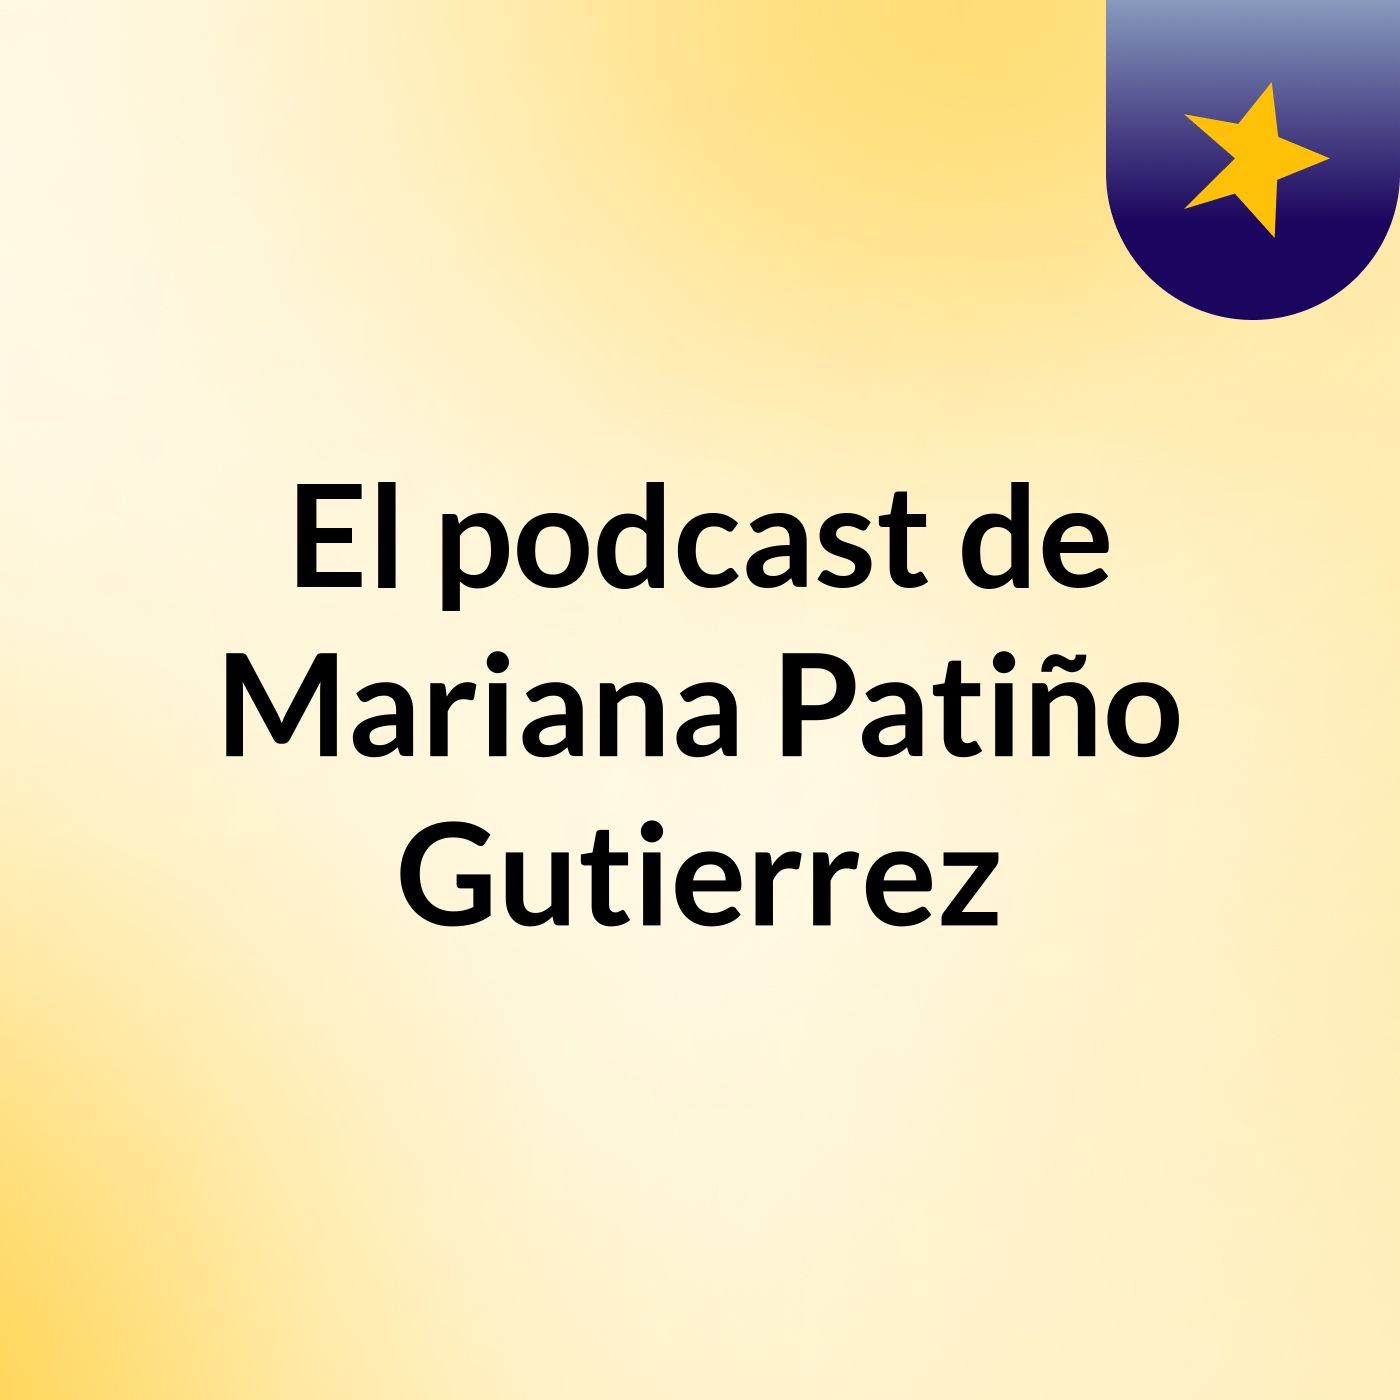 Episodio 3 - El podcast de Mariana Patiño Gutierrez